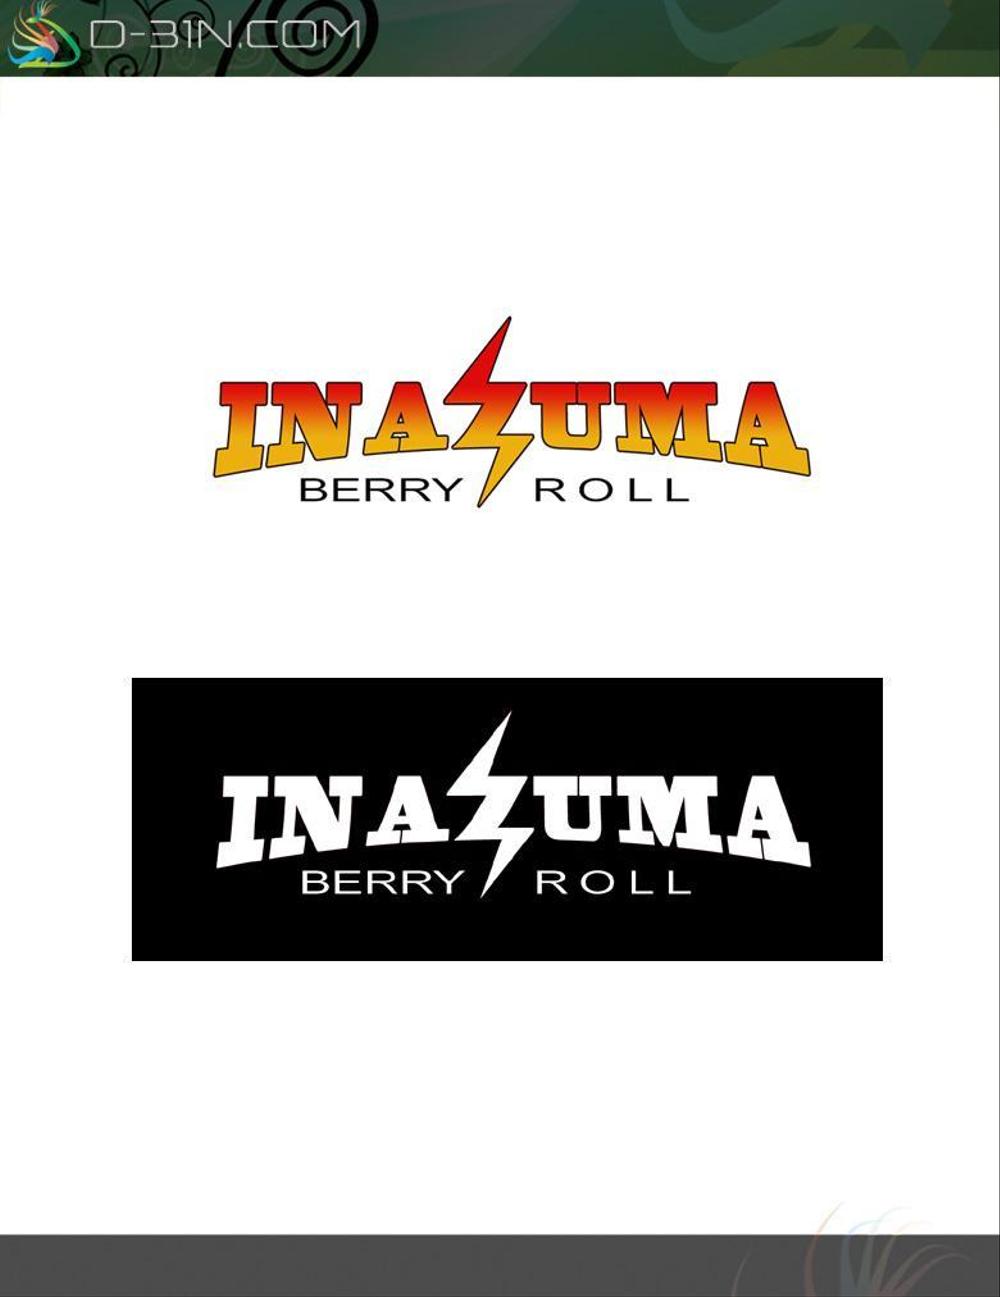 inazuma-logo01.jpg